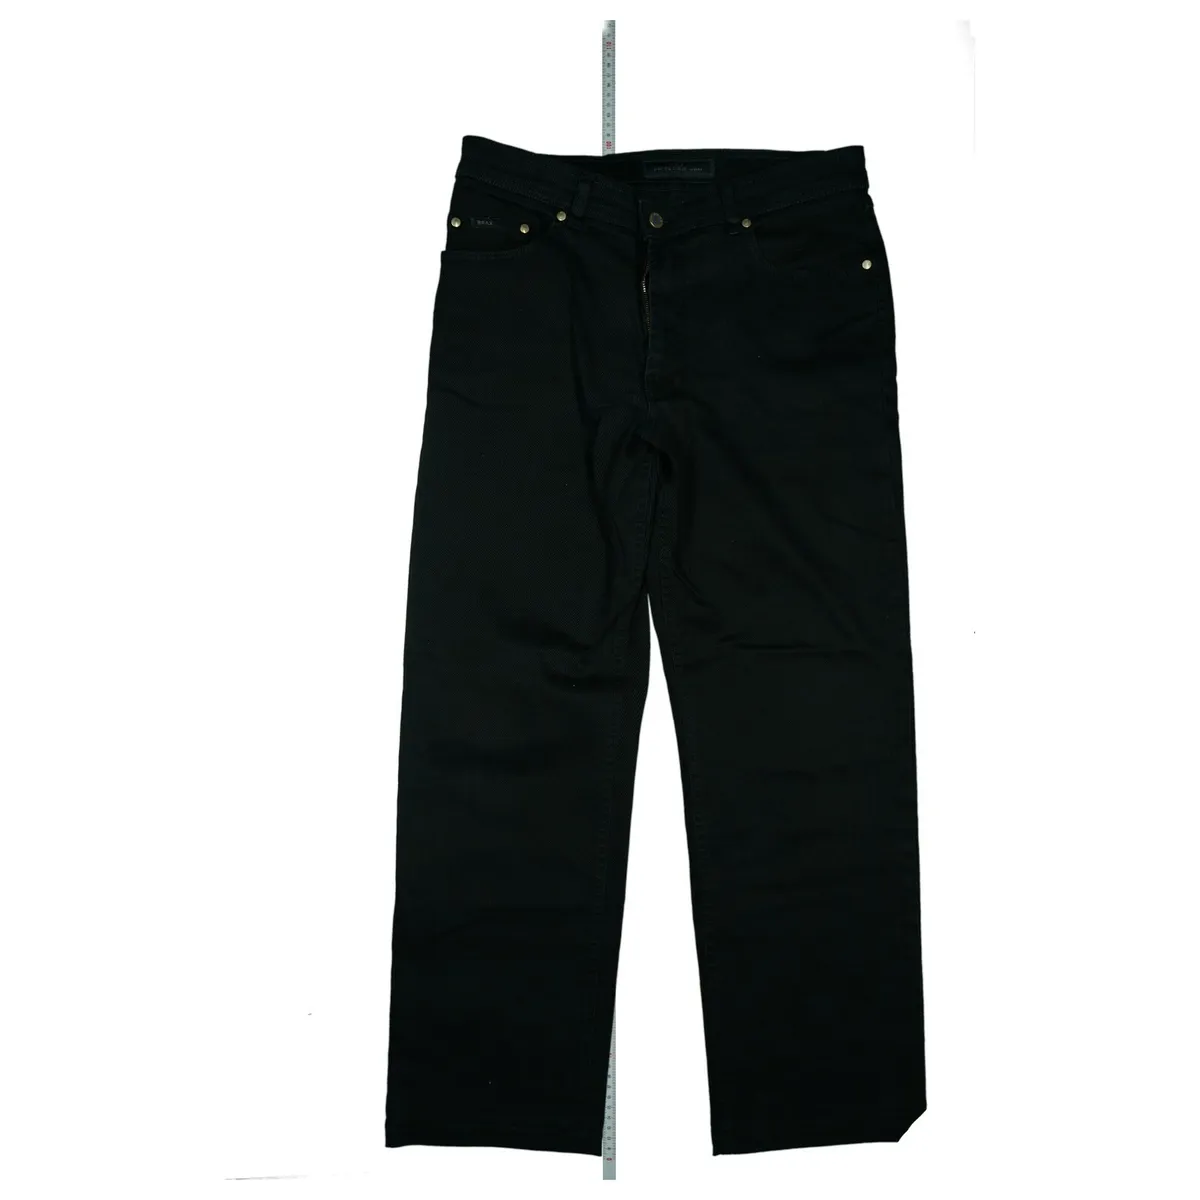 Perma Black By BRAX Carlos Men's Jeans Pants Stretch Size 50 W34 L30 Black  Top | eBay